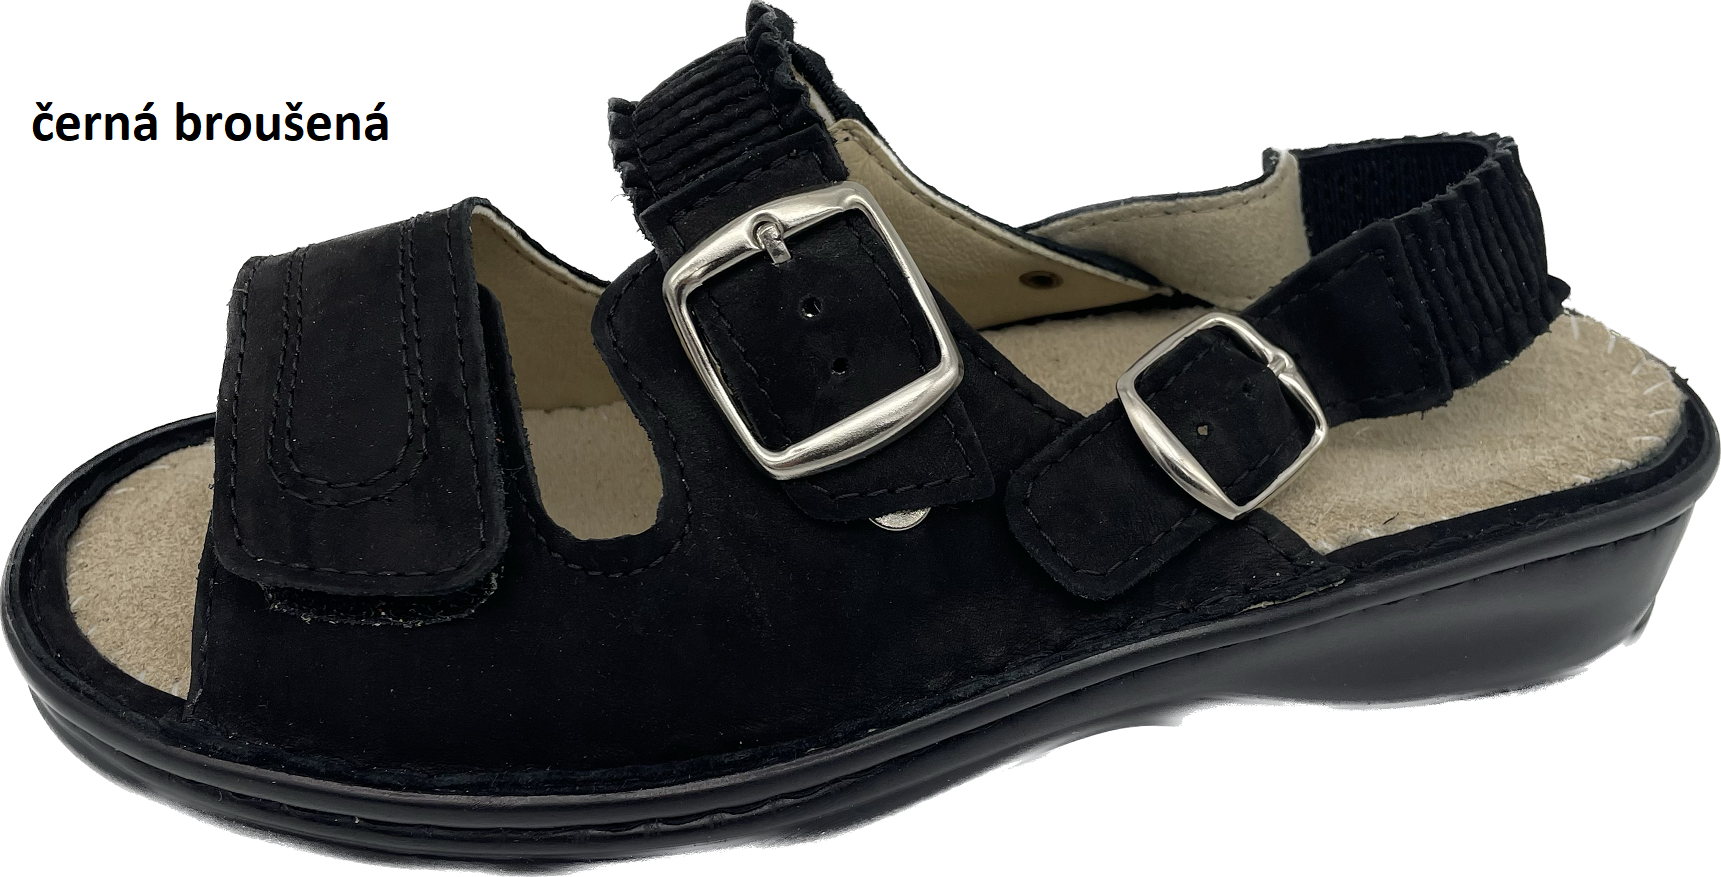 Boty Hanák vzor 305 P - černá podešev Barva usně: černá broušená, Velikosti obuvi: 36